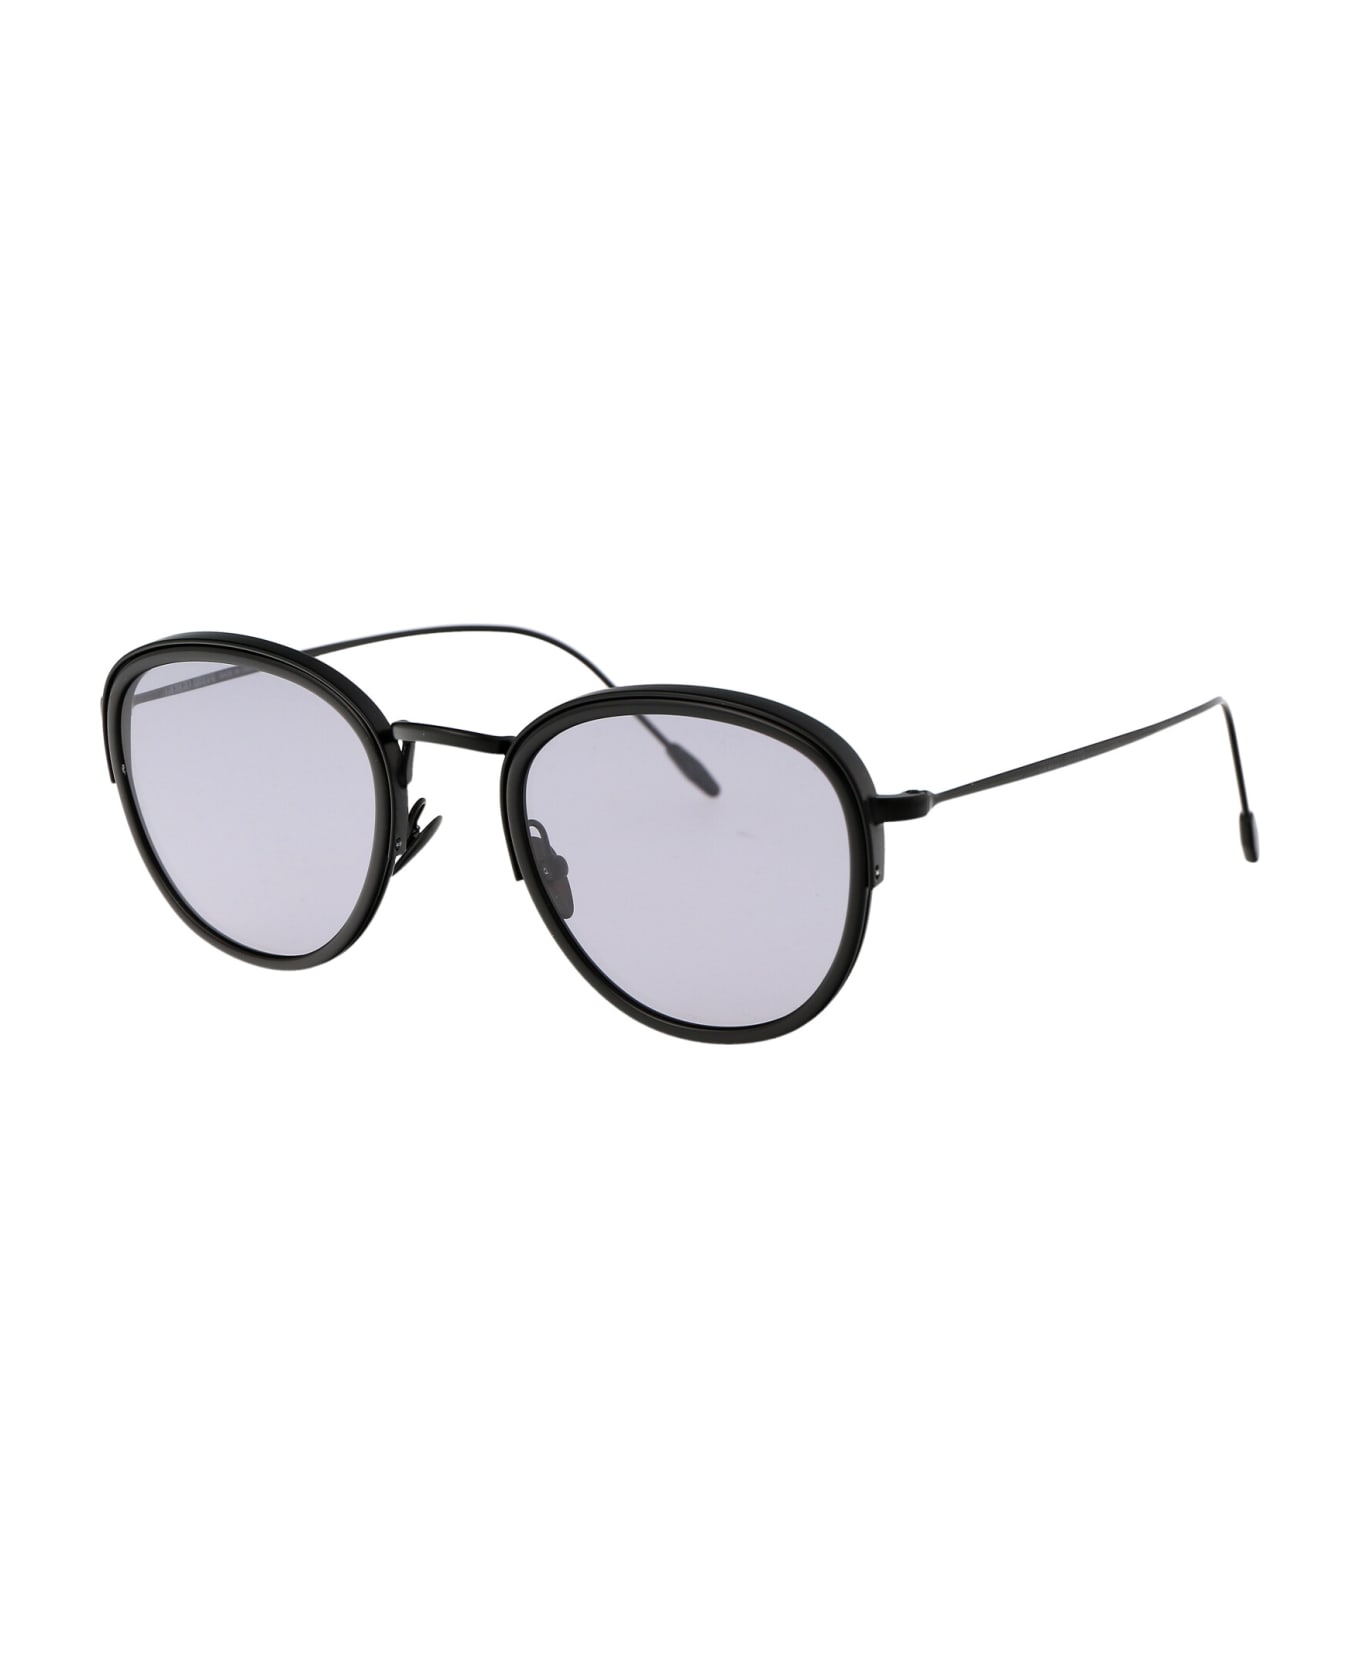 Giorgio Armani 0ar6068 Sunglasses - 3001M3 Matte Black